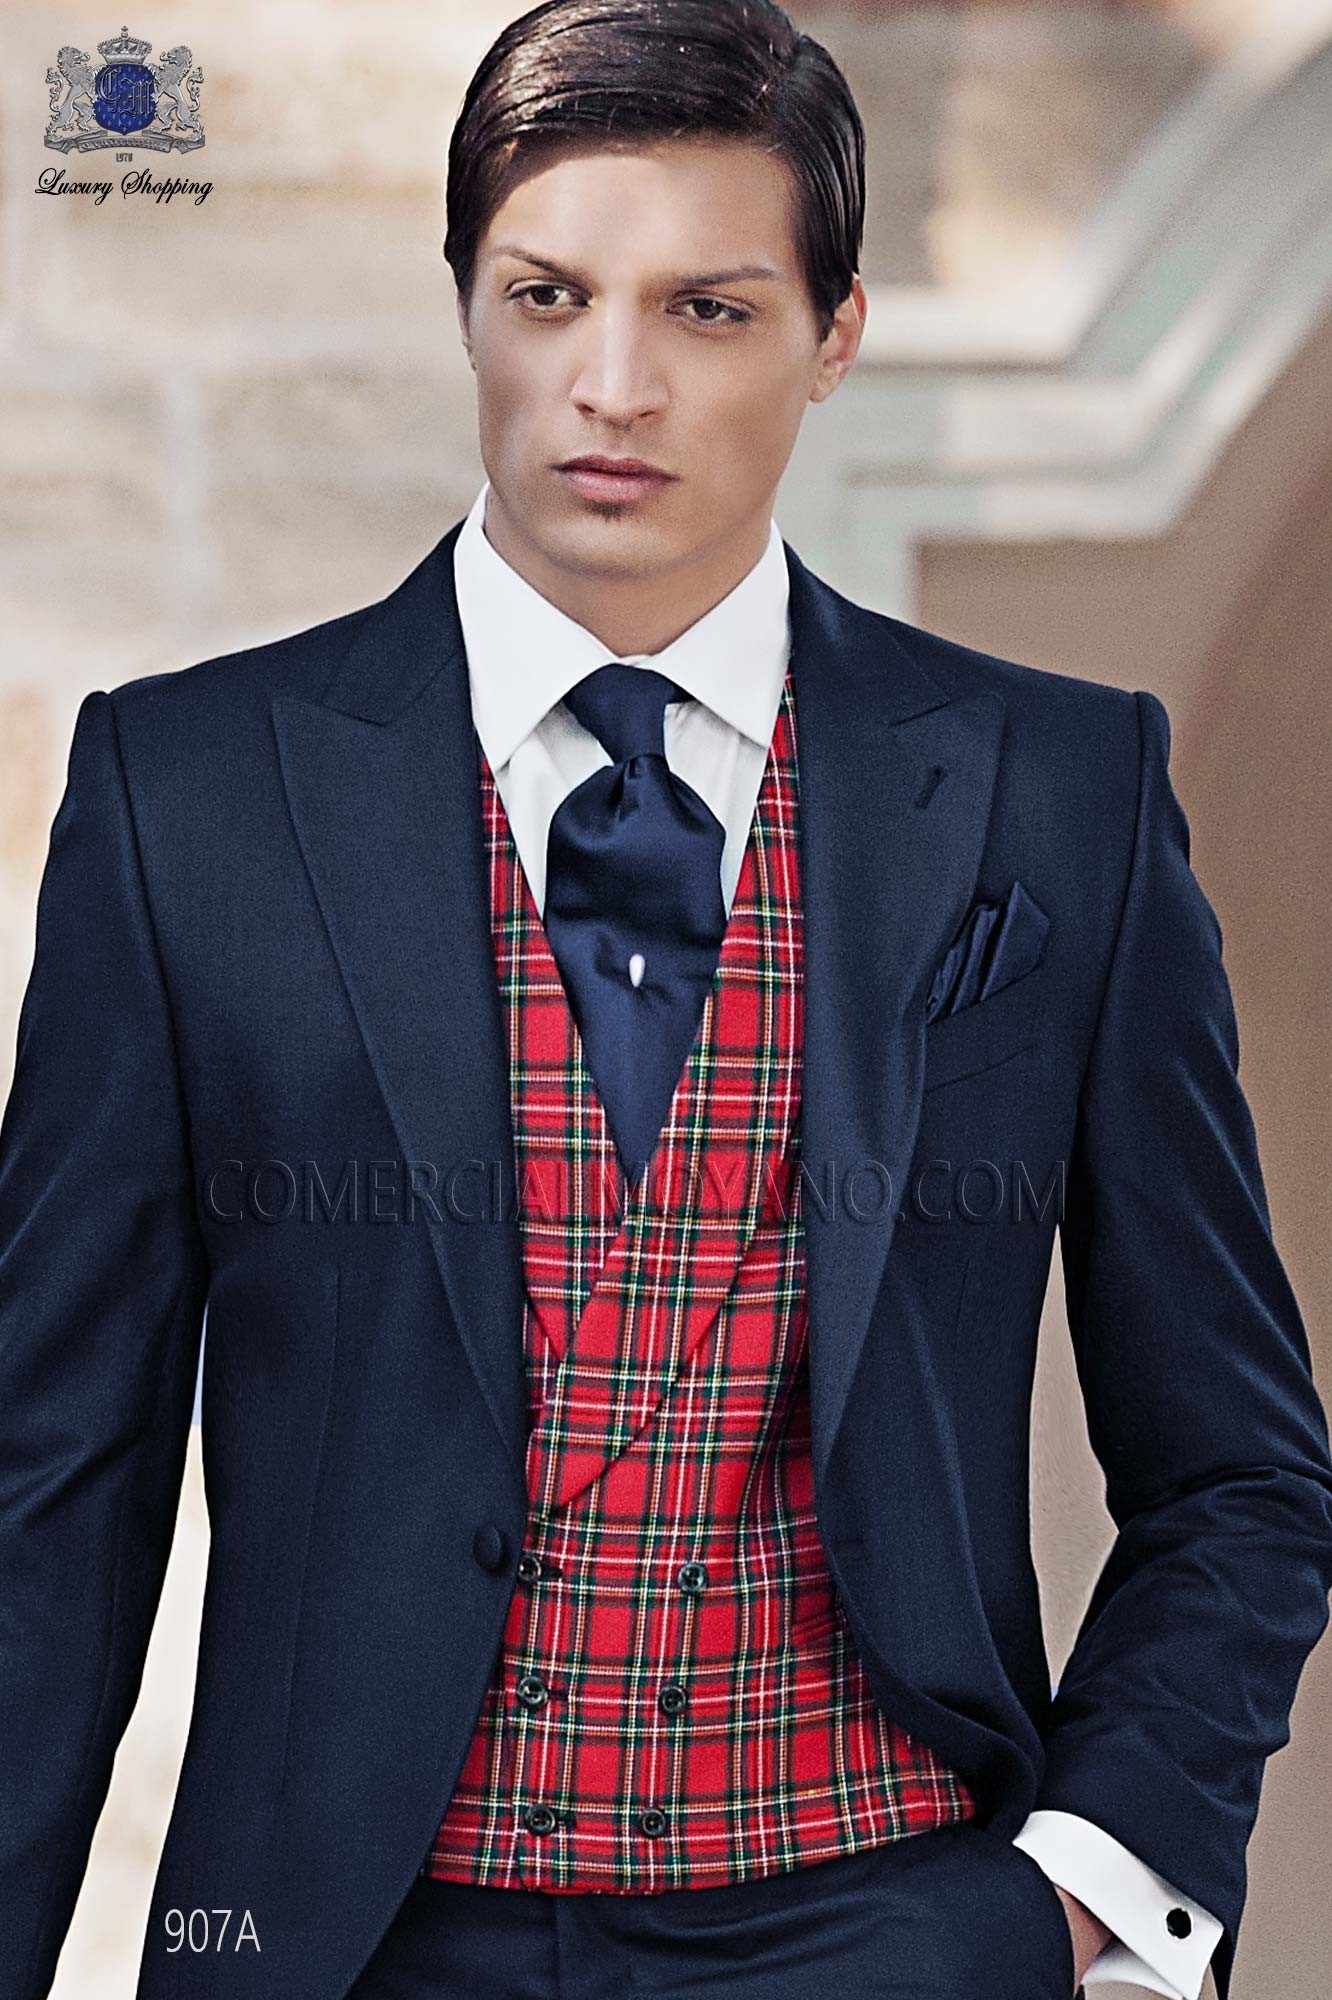 Traje Gentleman de novio azul modelo: 907A Mario Moyano colección Gentleman